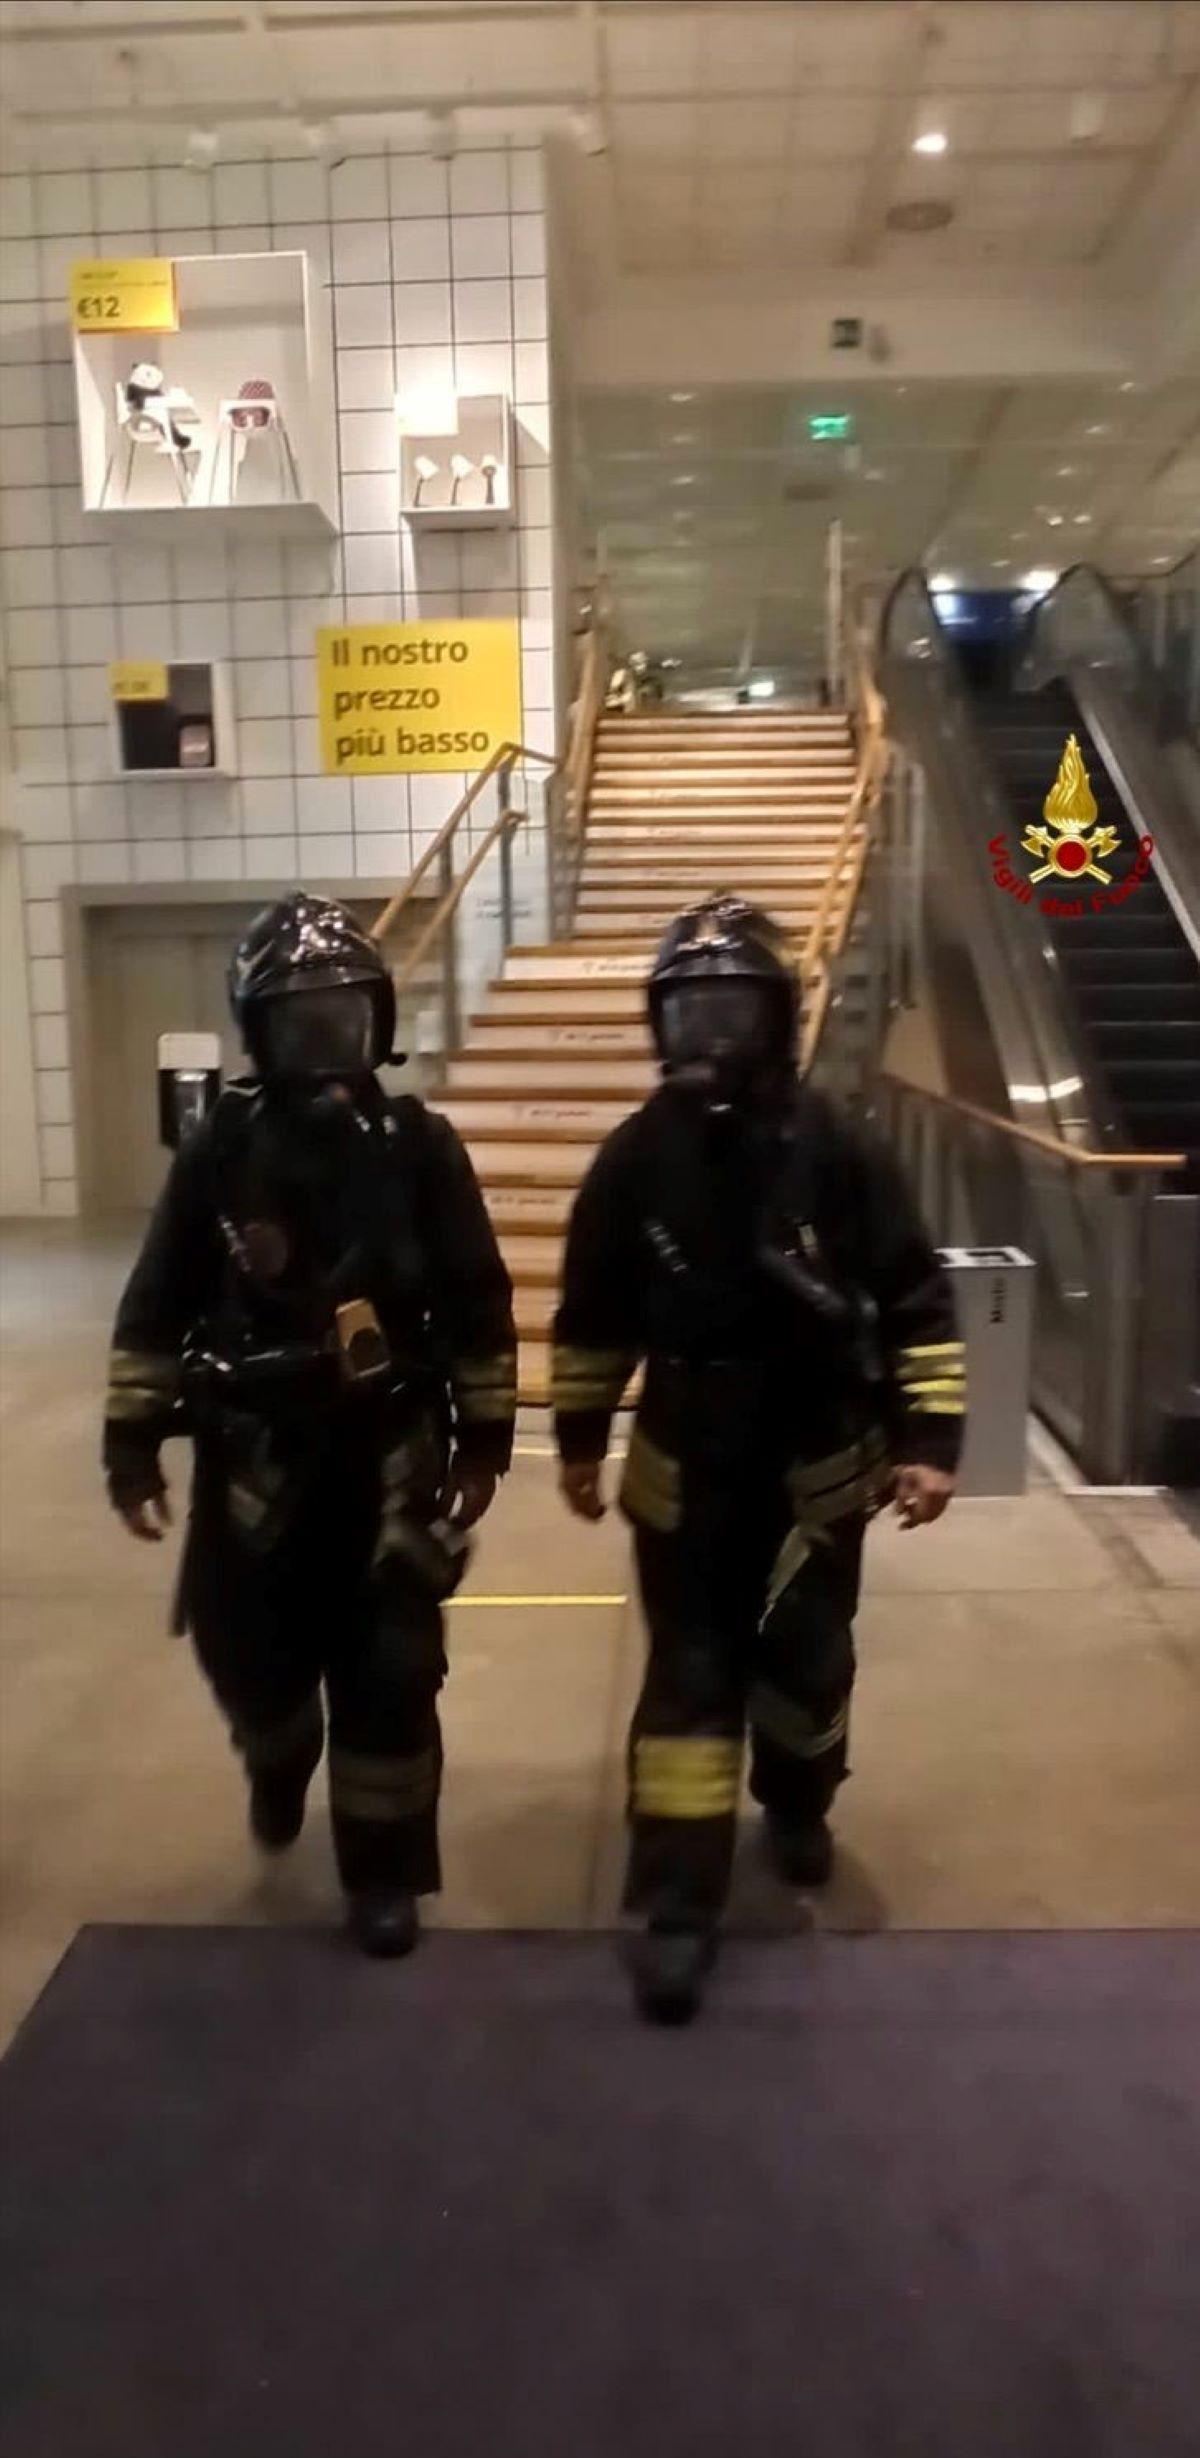 Ikea Corsico Milano Pompieri Evacuazione Sostanza Aria